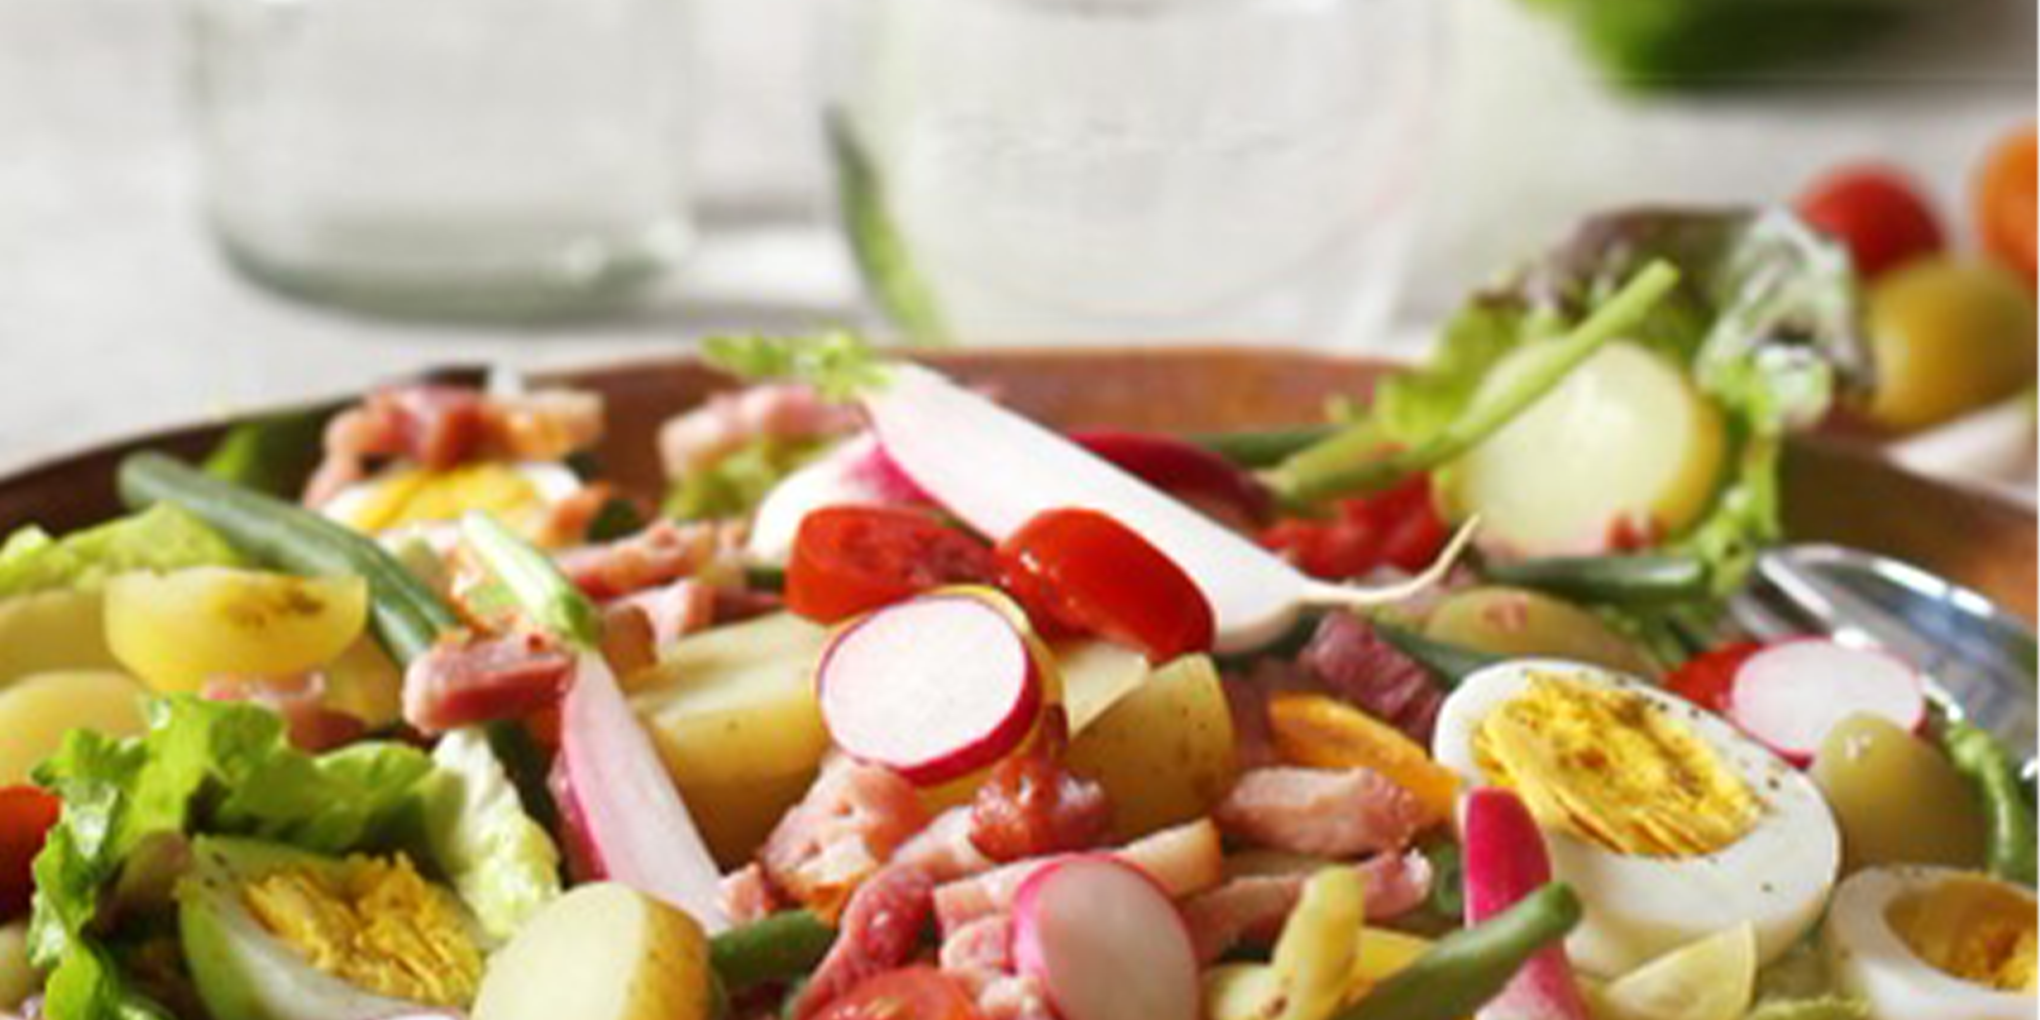 la délicieuse salade liégeoise sans gluten ni lactose